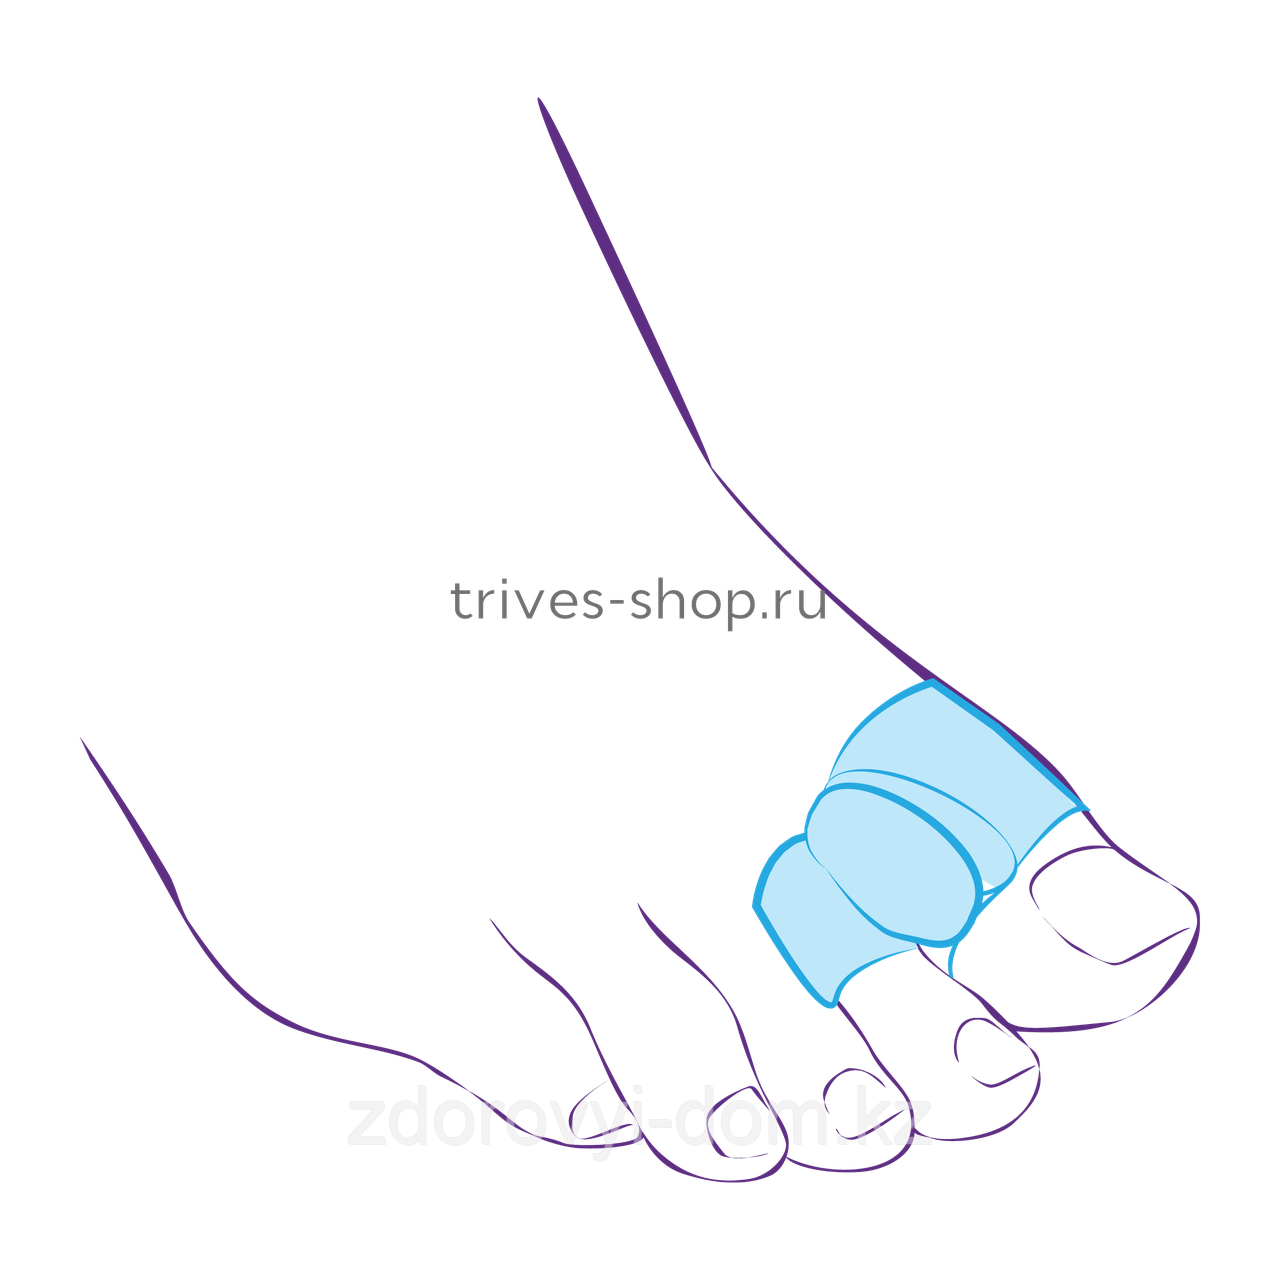 Межпальцевая перегородка с кольцами на 1-й и 2-й пальцы СТ-54.2, фото 1